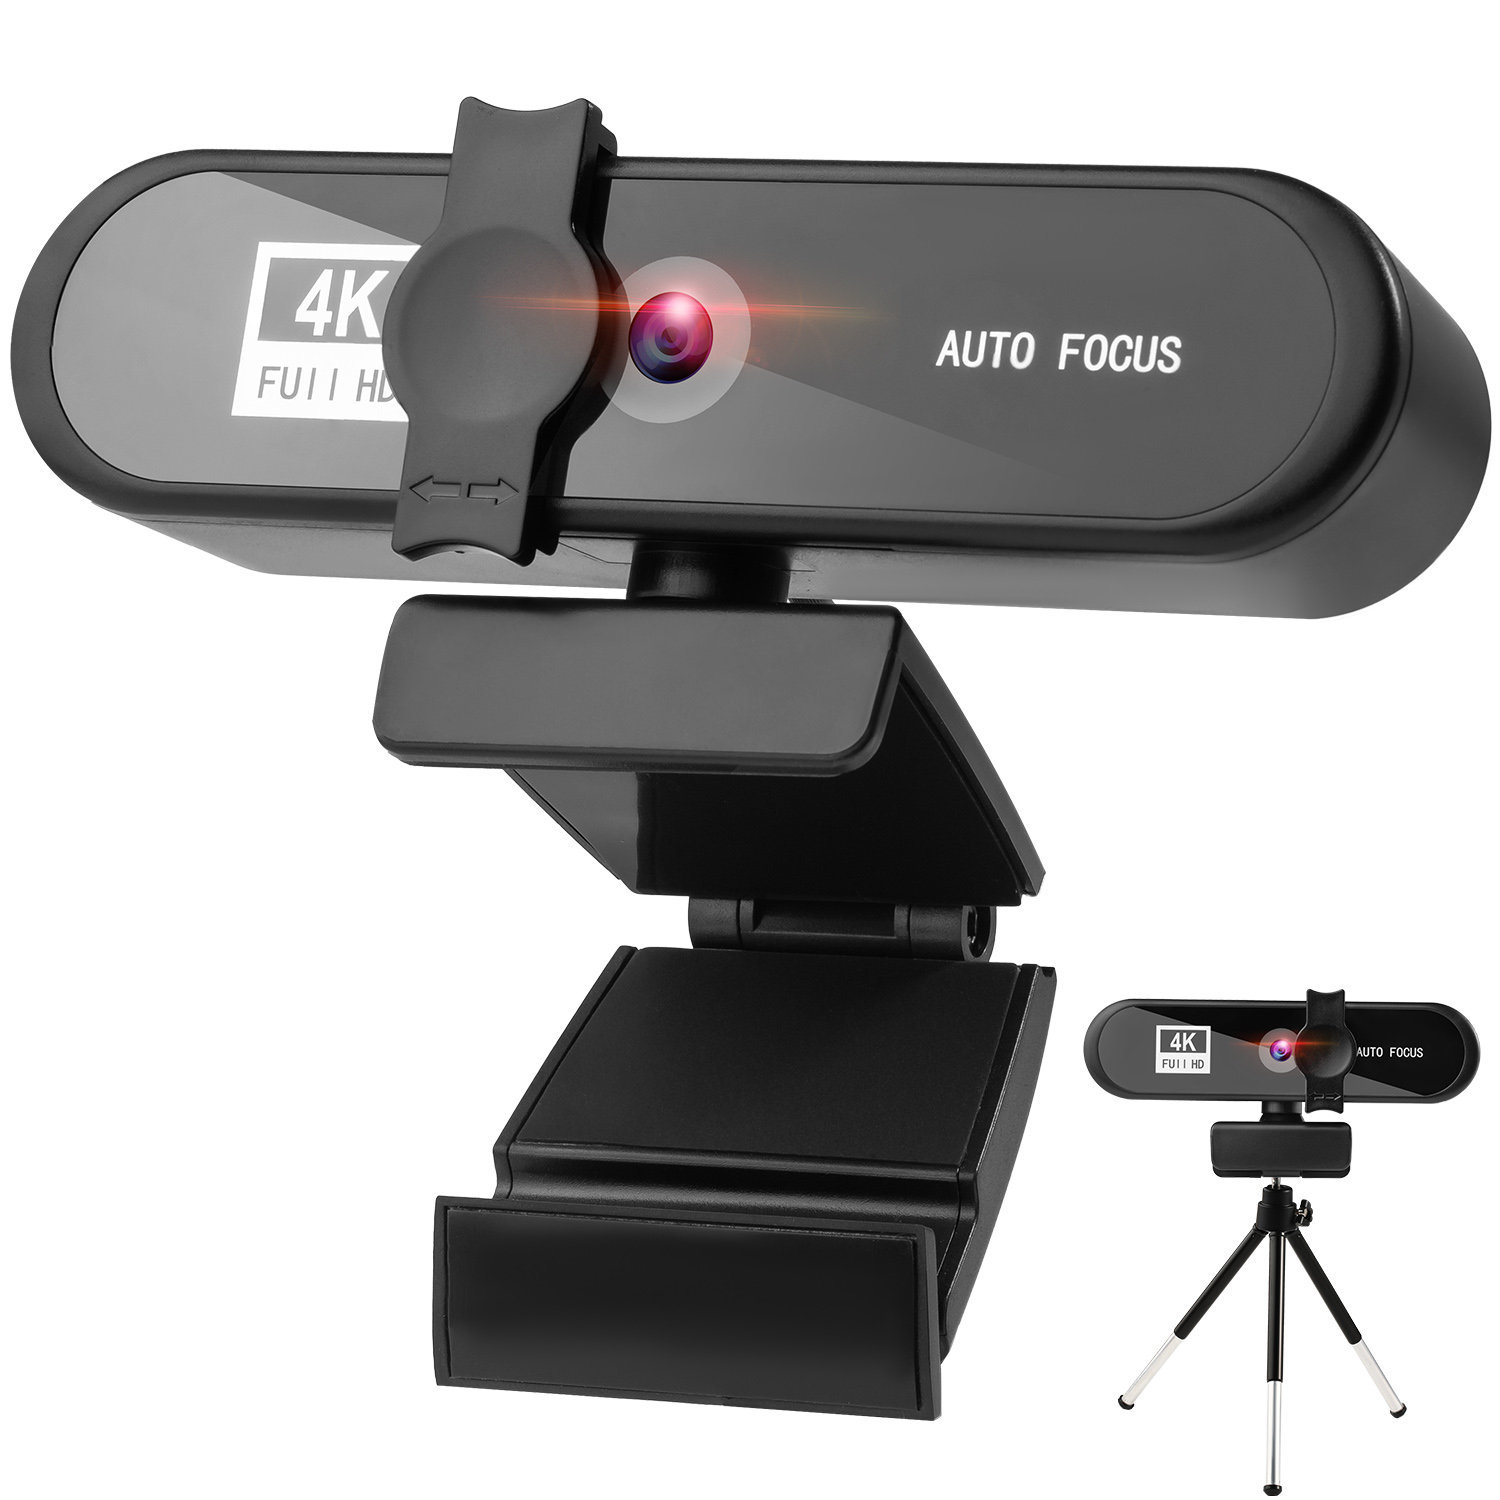 4k webcam for streaming